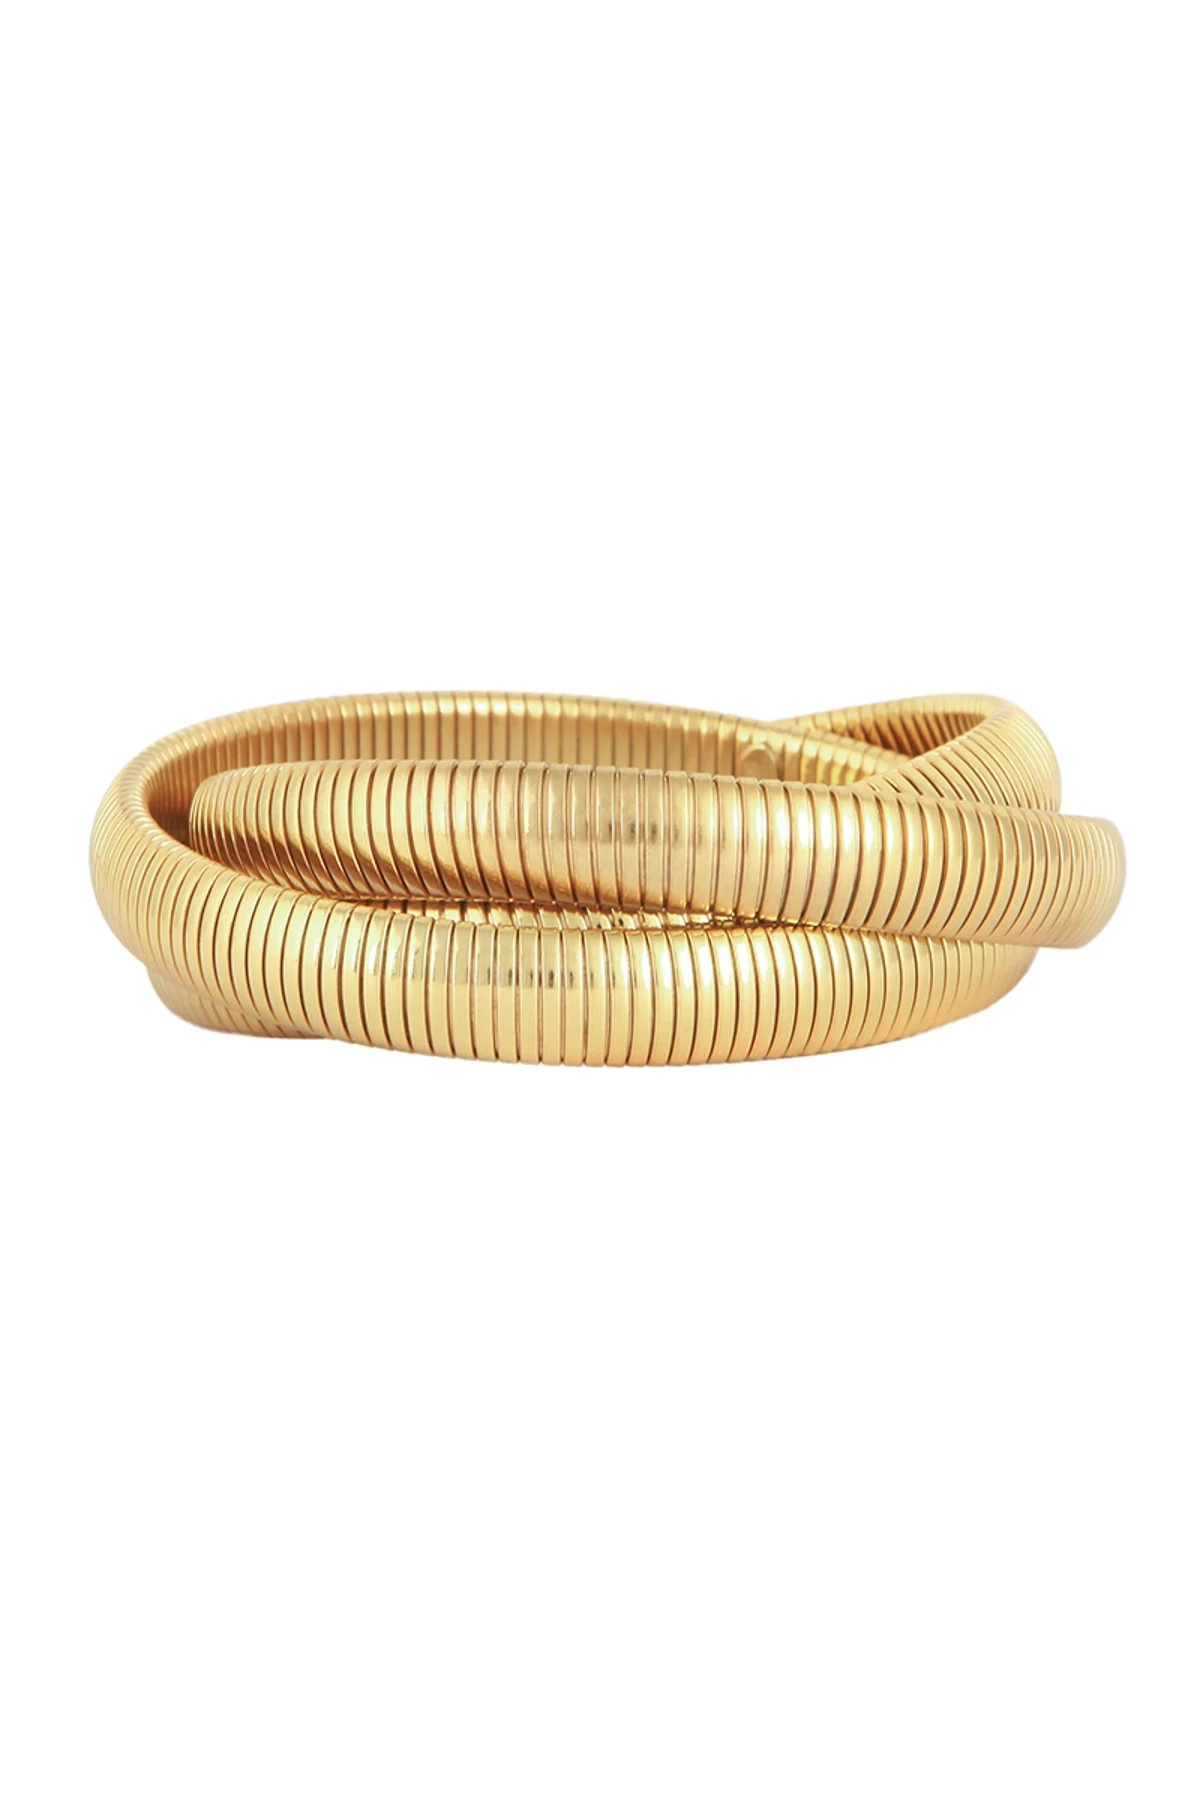 0 GOLD Infinity Bracelet image number 1